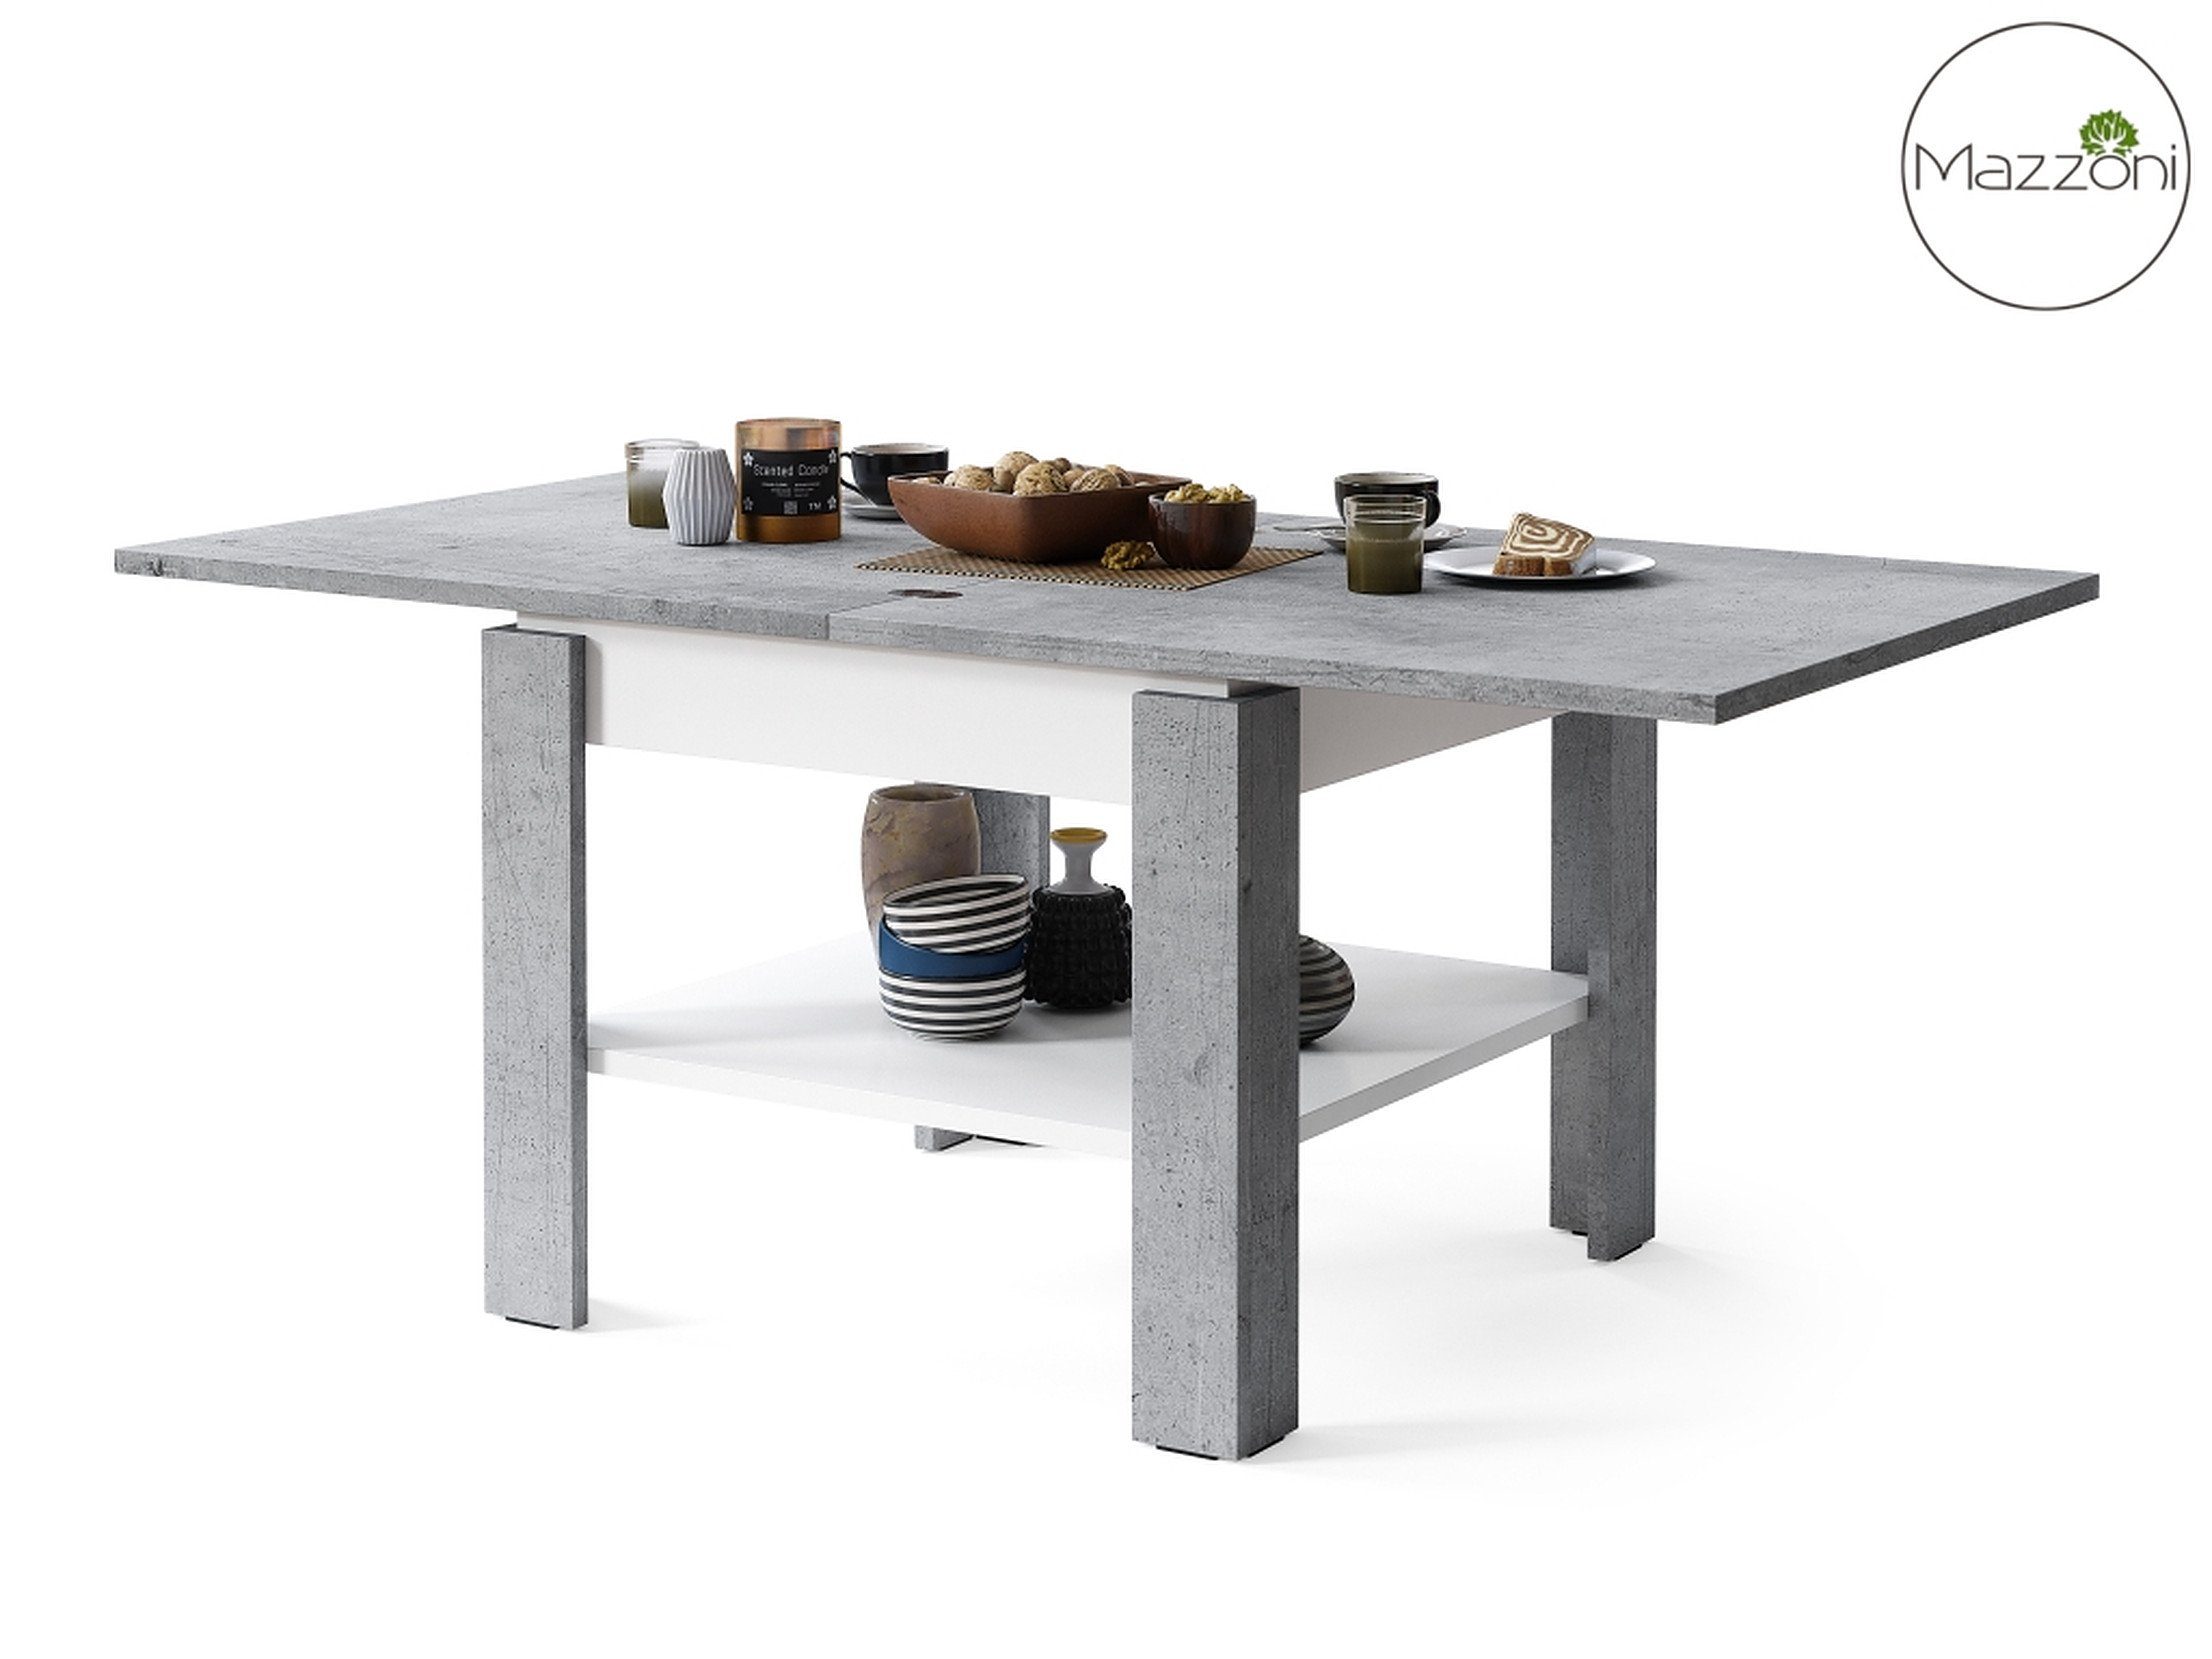 - Beton matt / Mazzoni 130cm Couchtisch Weiß Tisch matt Esstisch Leo 65 Weiß - Design aufklappbar Beton